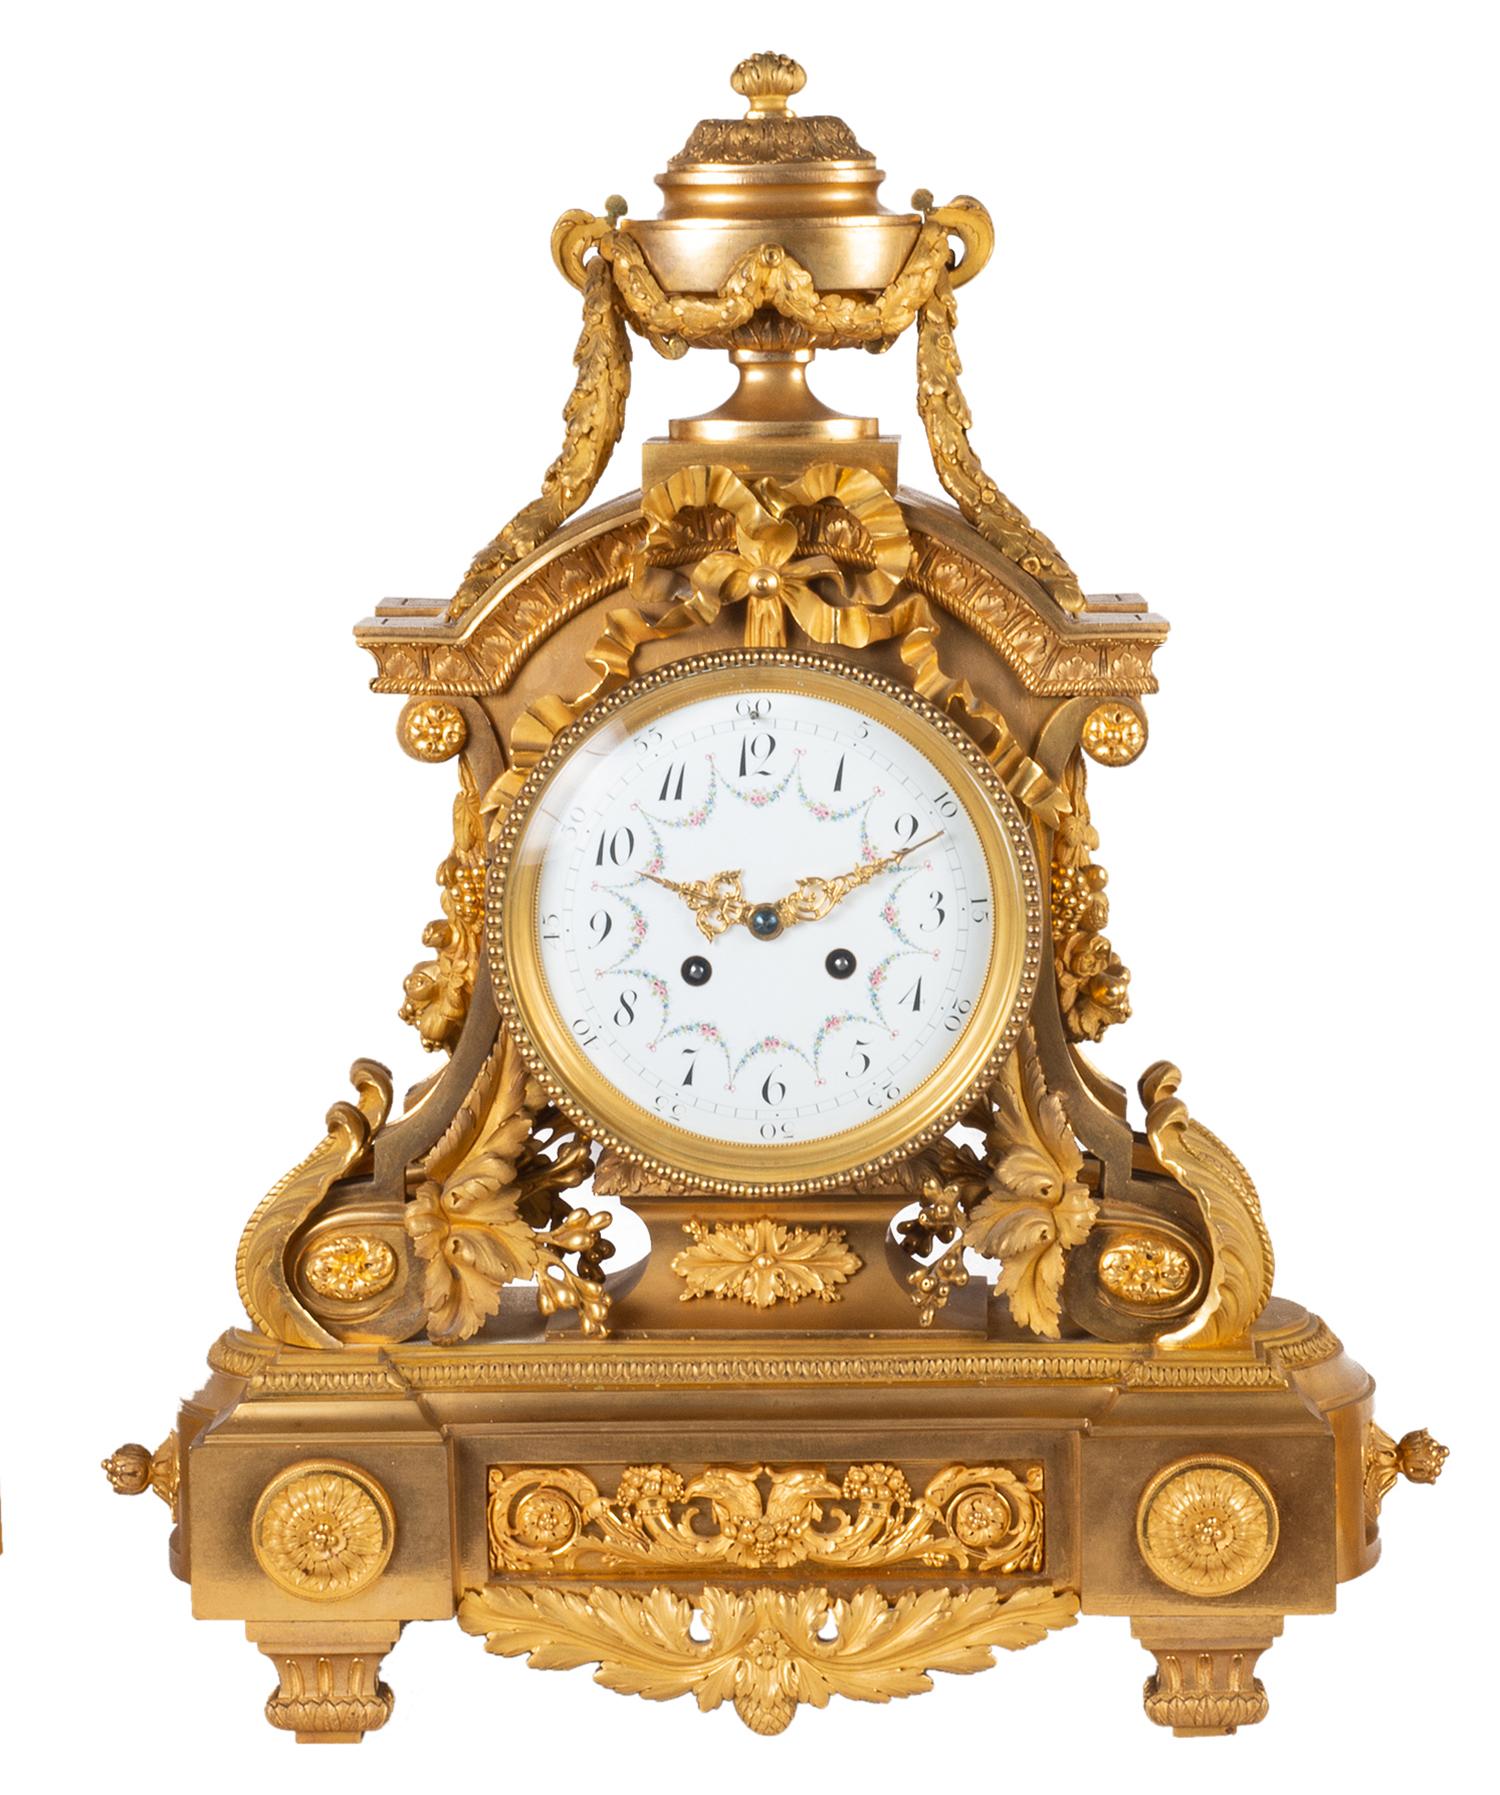 Eine sehr gute Qualität 19. Jahrhundert Louis XVI-Stil vergoldet Ormolu Uhr Garnitur, die Uhr hat eine klassische Urne Finial mit Girlanden, Bänder und blattförmige Dekoration. Das weiß emaillierte Zifferblatt mit handgemalten Blumenranken, ein